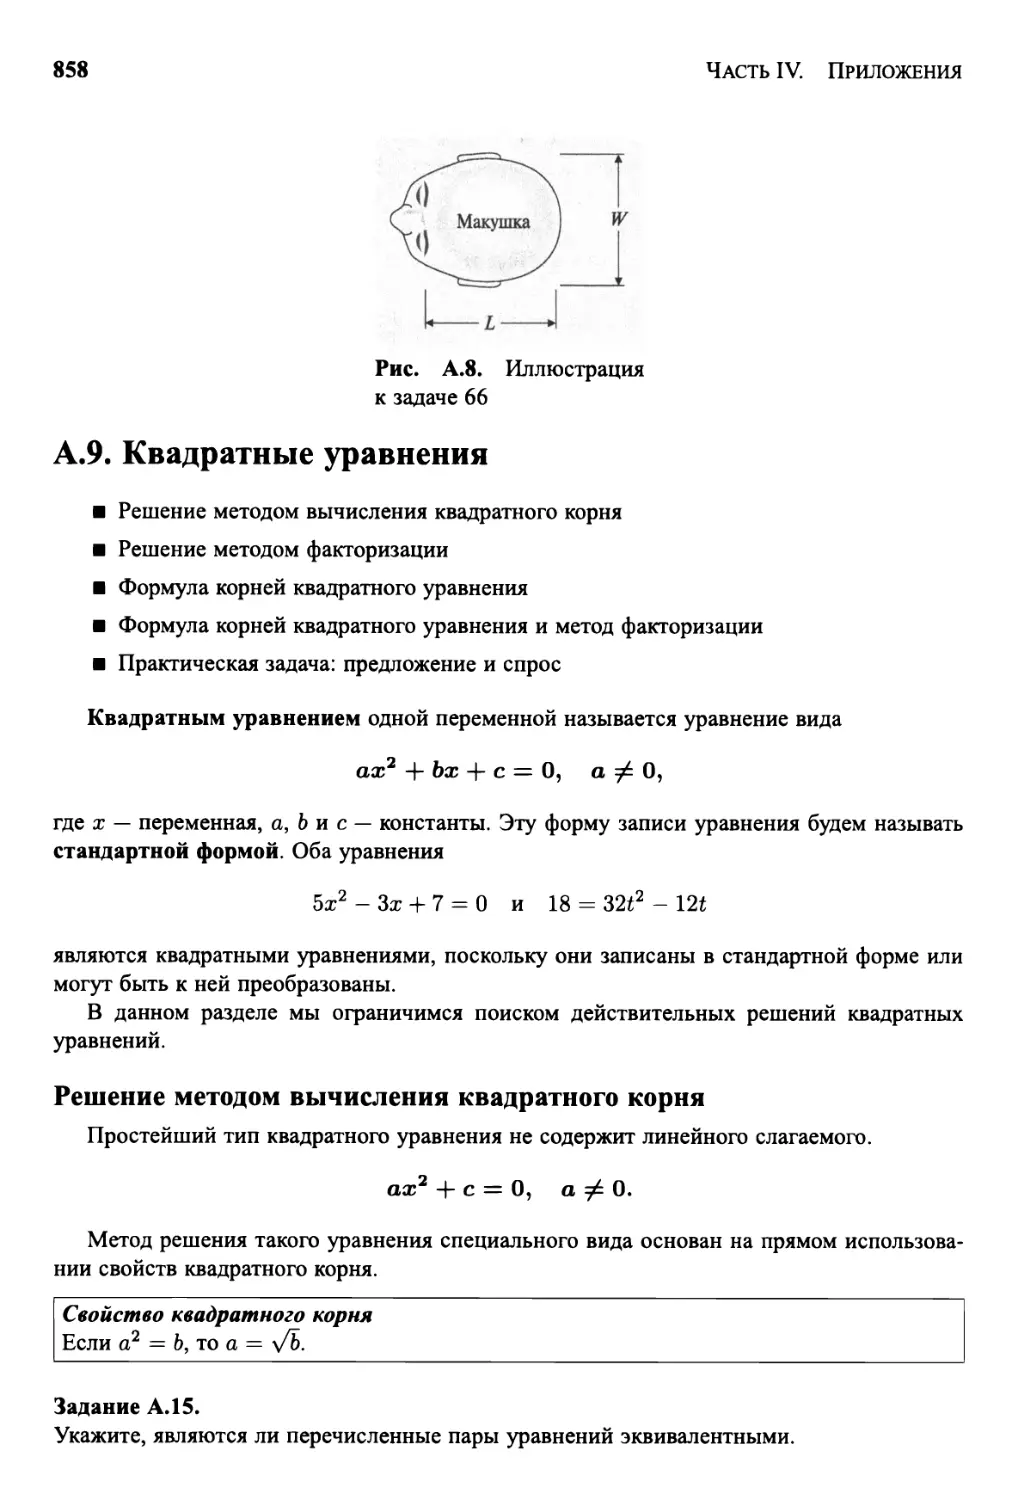 А.9 Квадратные уравнения